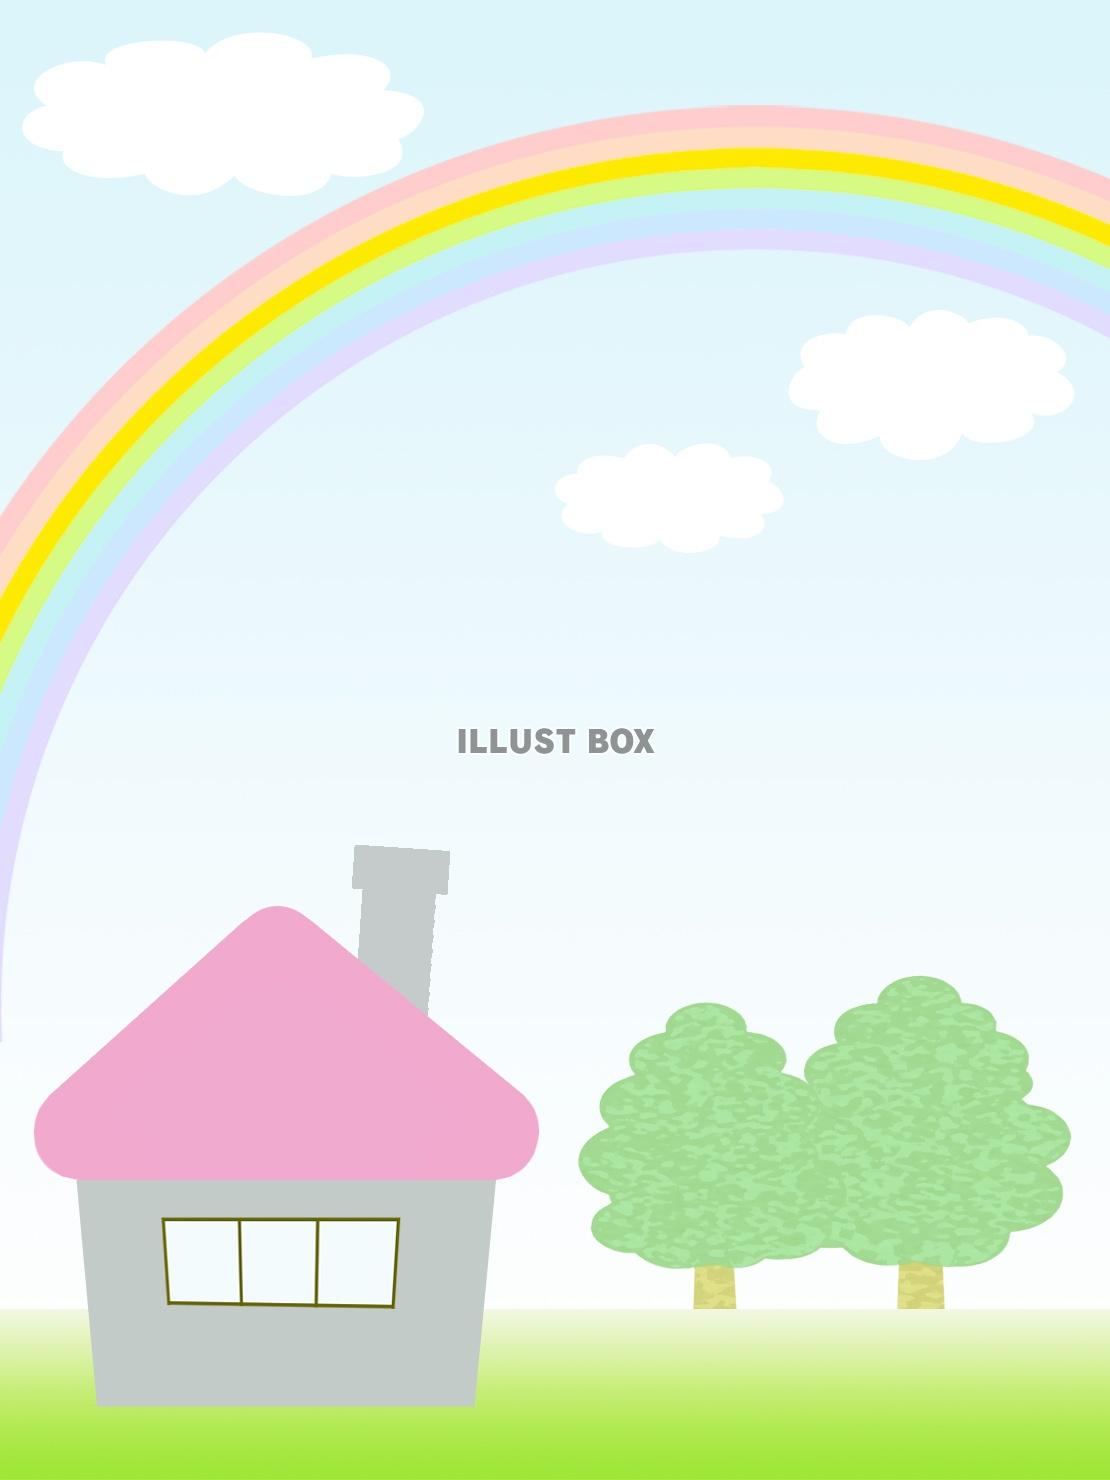 無料イラスト 風景壁紙 虹と家と樹木の背景素材イラスト